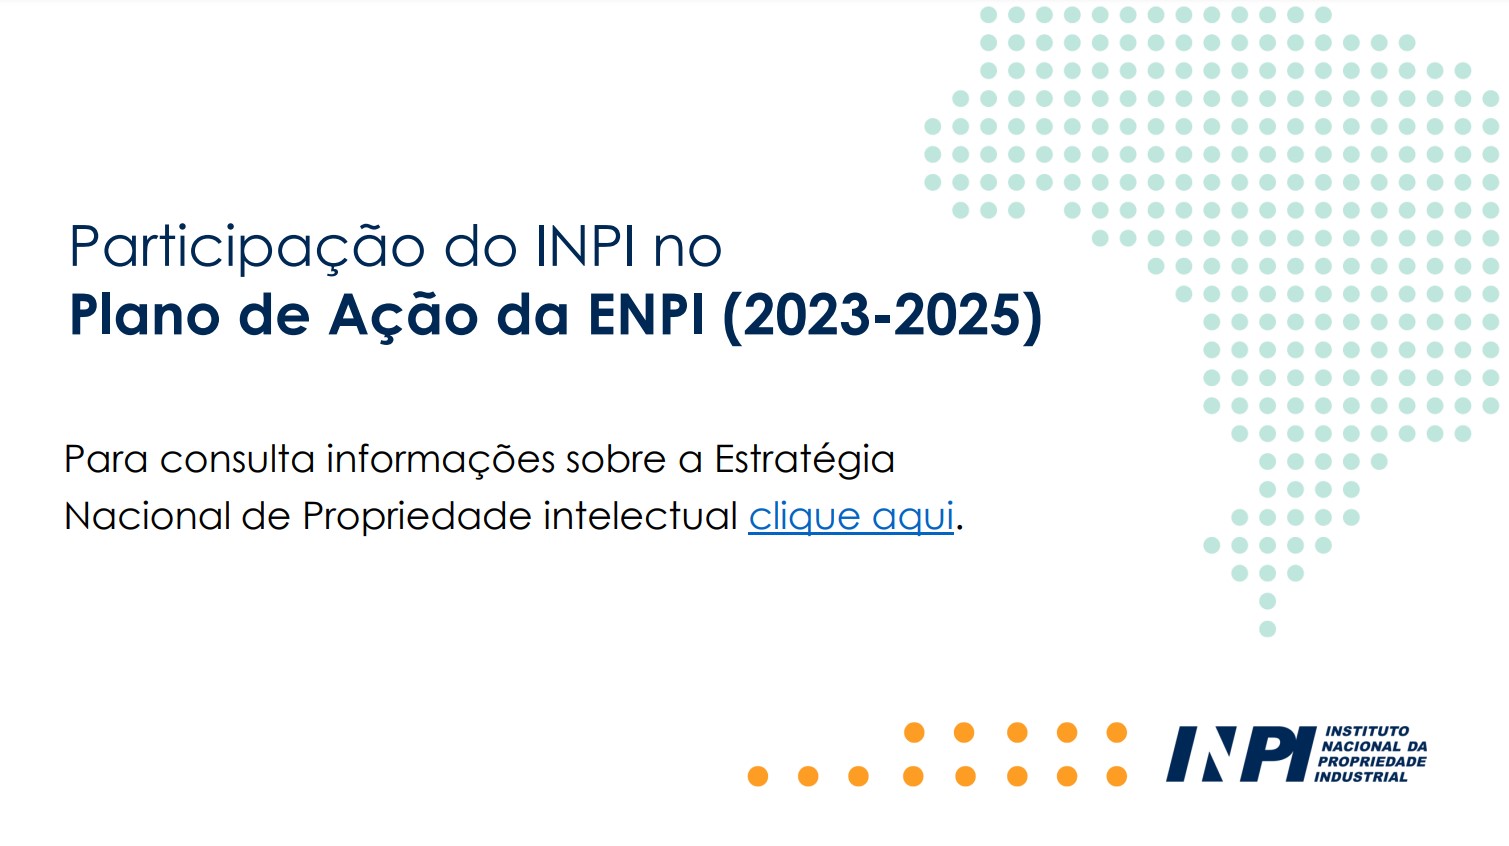 Participação do INPI no Plano de Ação da ENPI 2023-2025.jpg